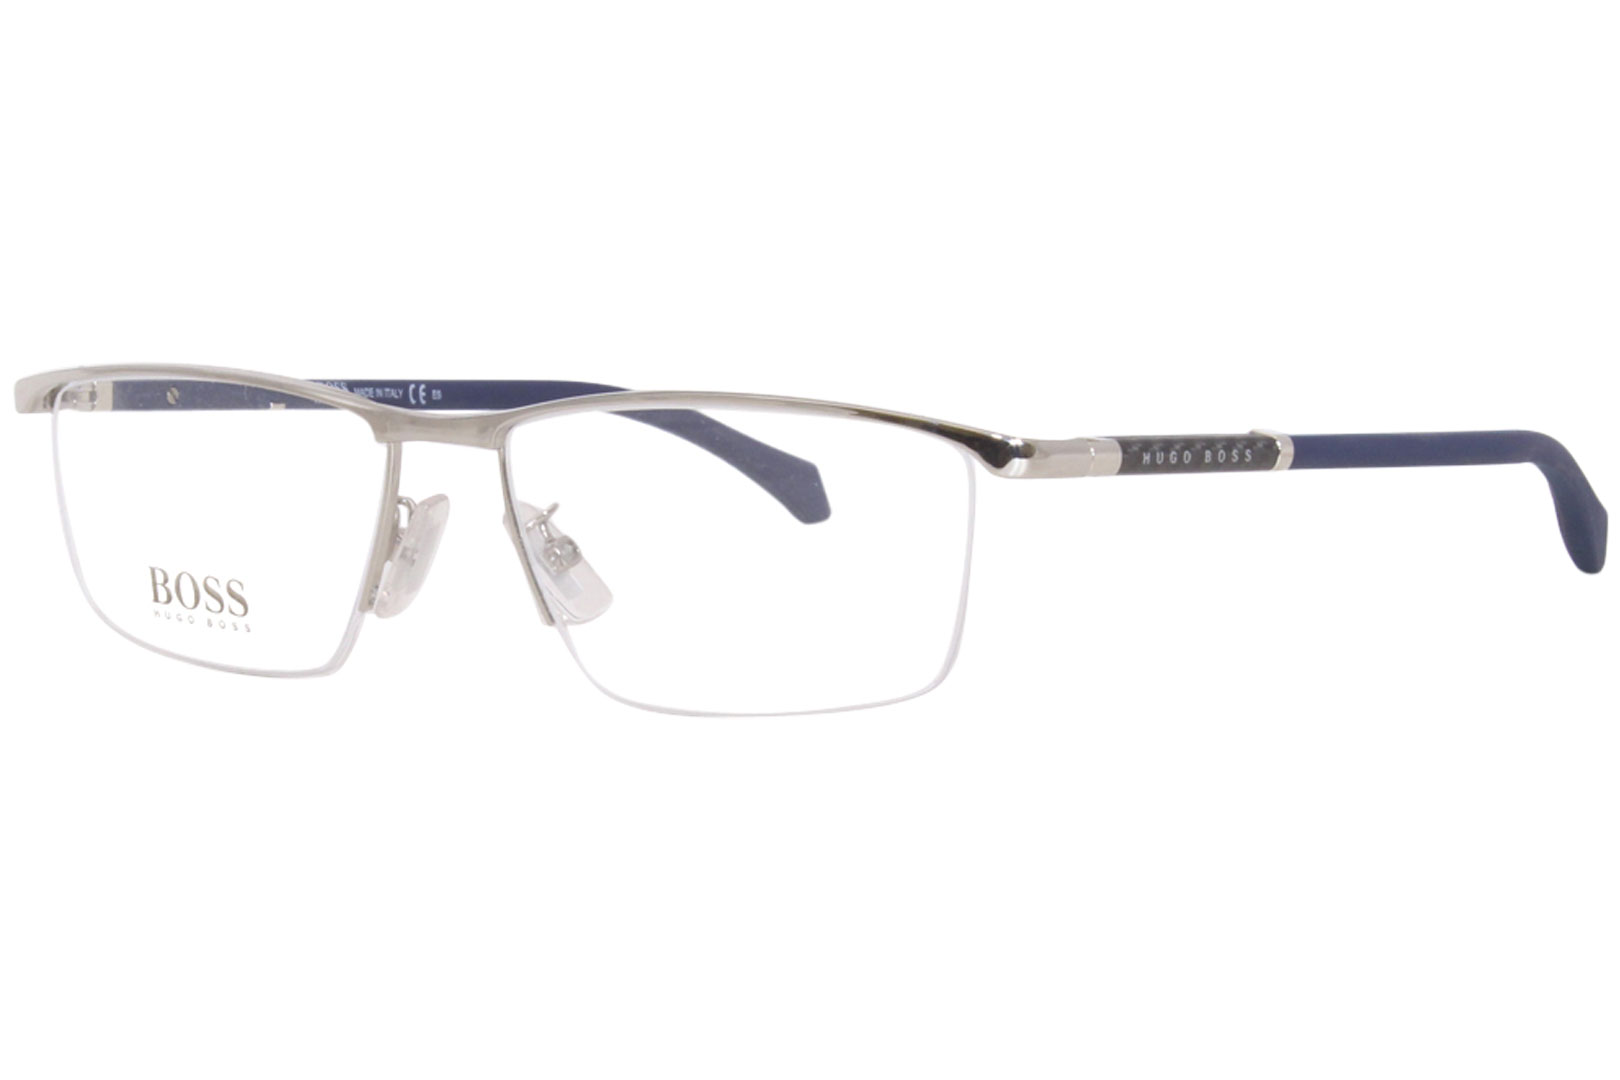 Hugo Boss 1104/F 010 Eyeglasses Men's Full Rim Rectangle Shape ...